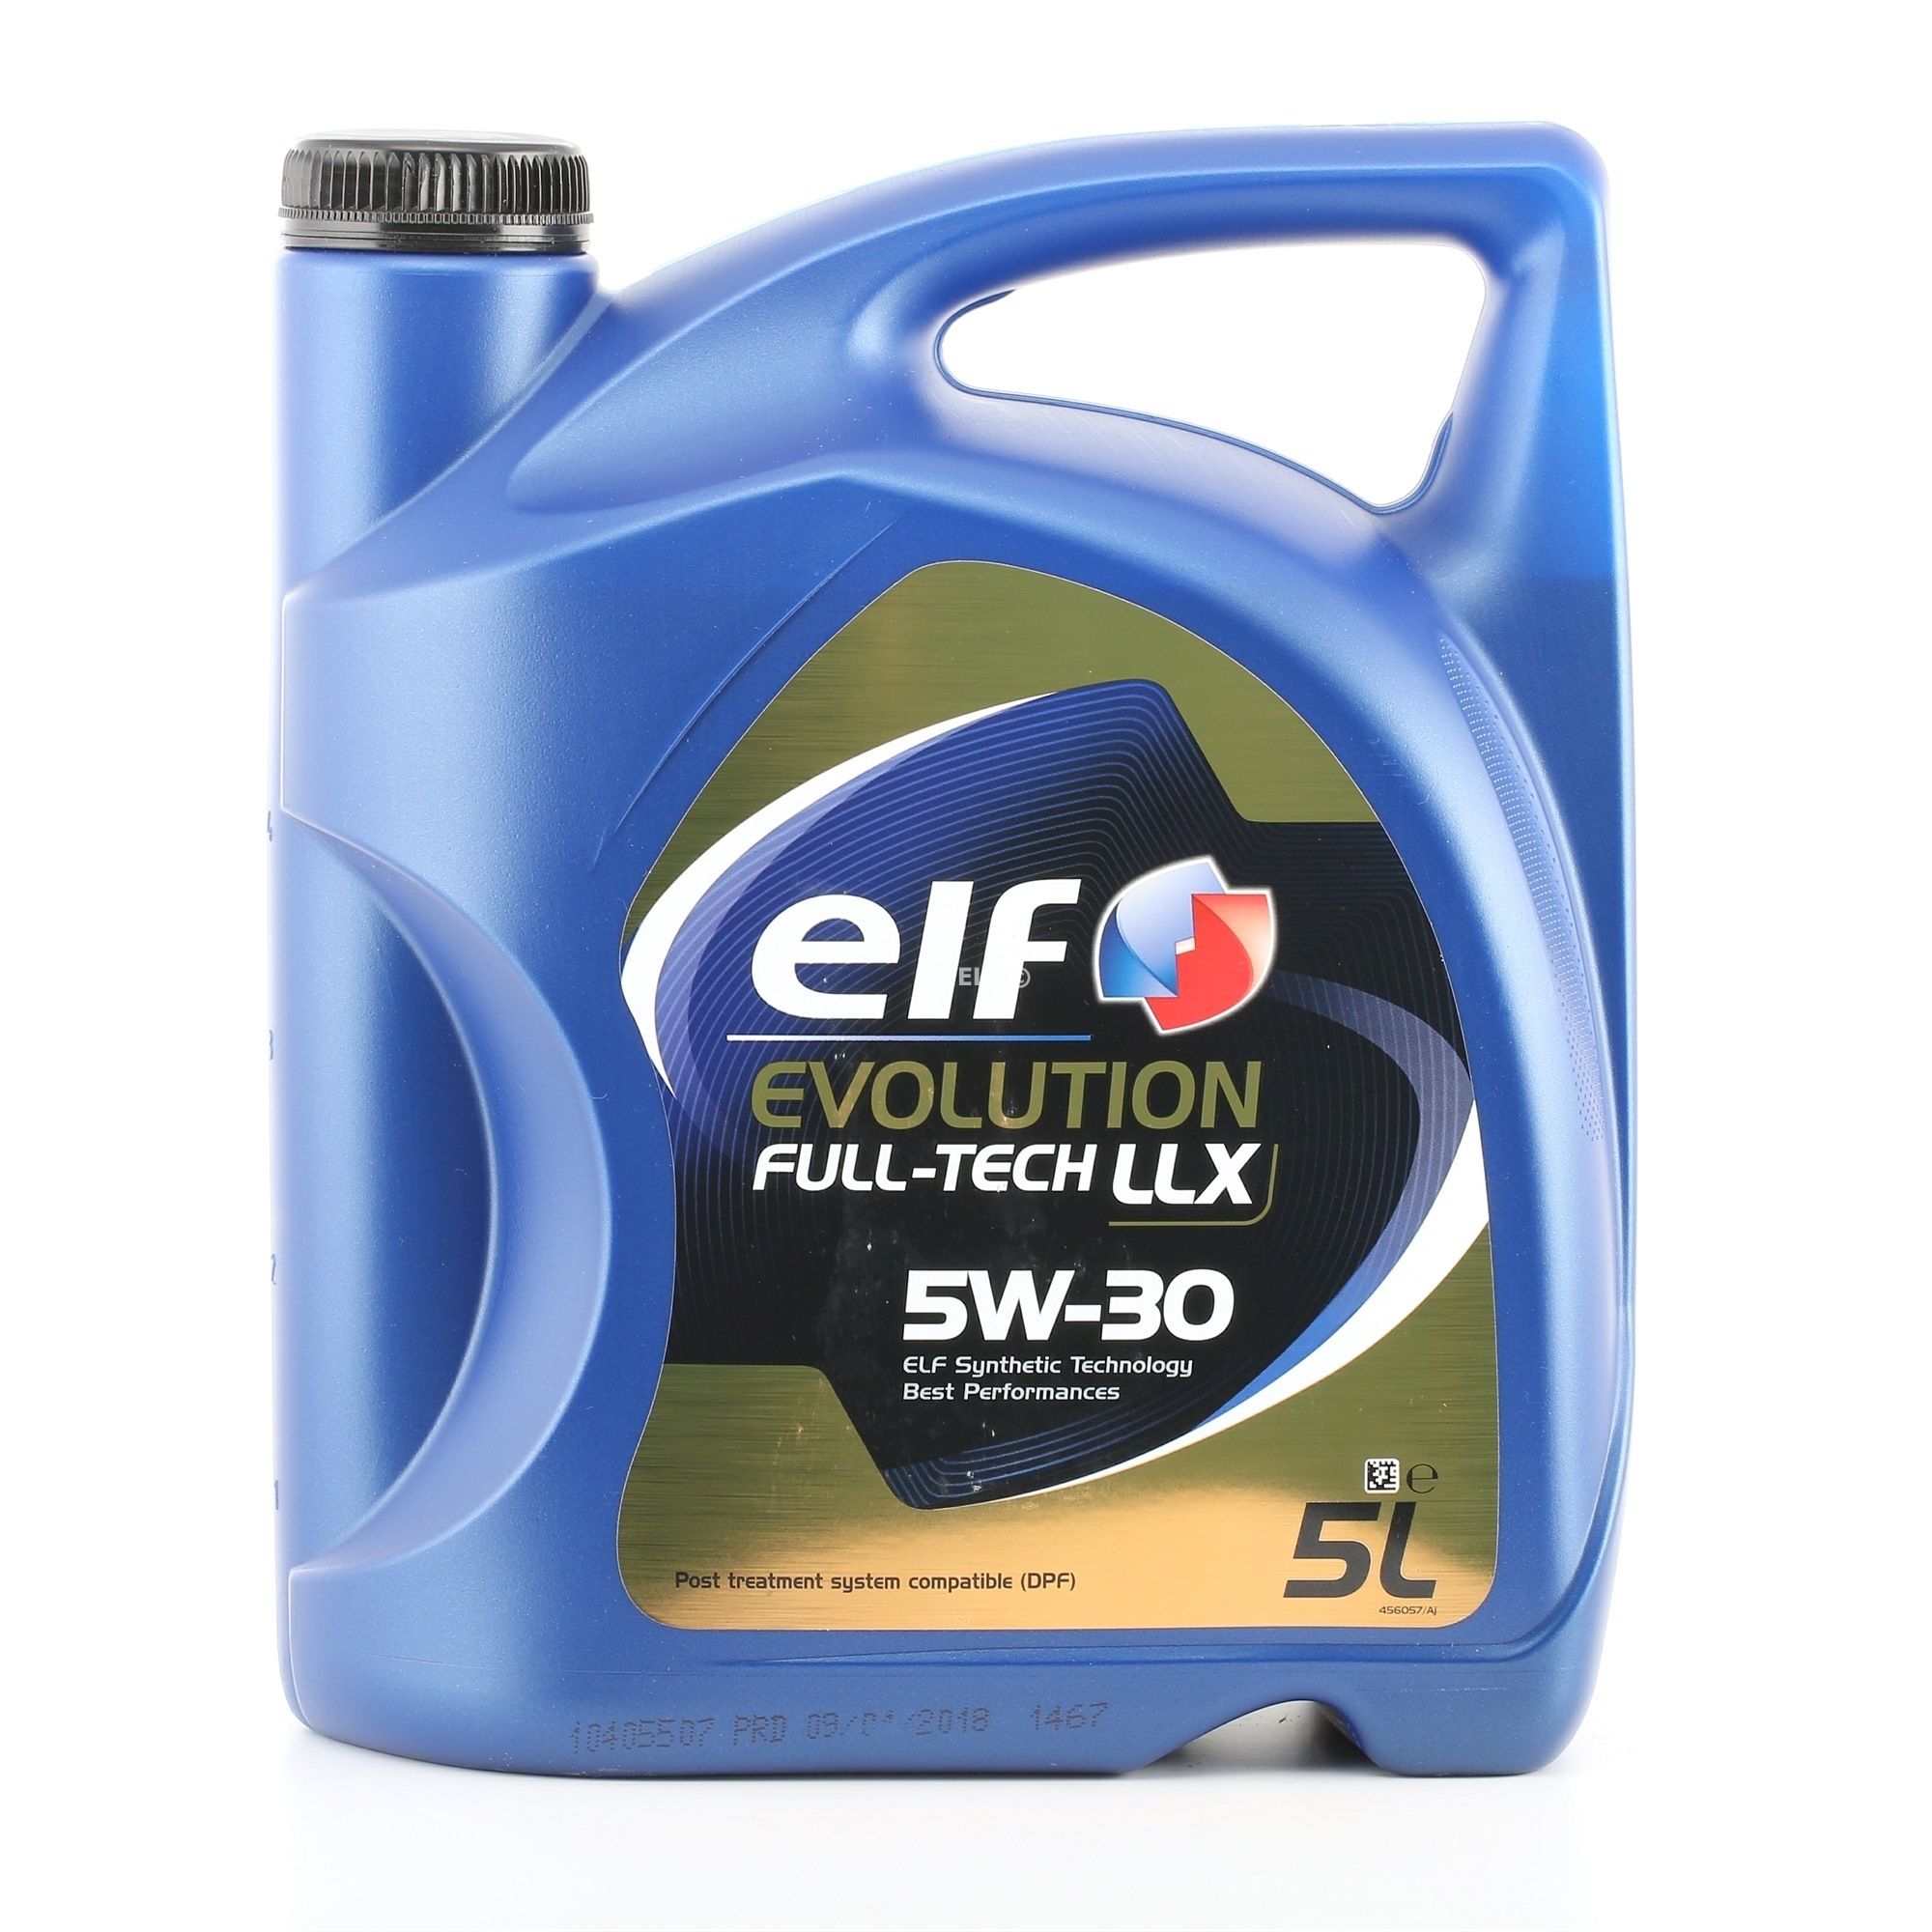 ELF Evolution, Full-Tech LLX 2194890 Moottoriöljy 5W-30, 5l, Synteettinen öljy